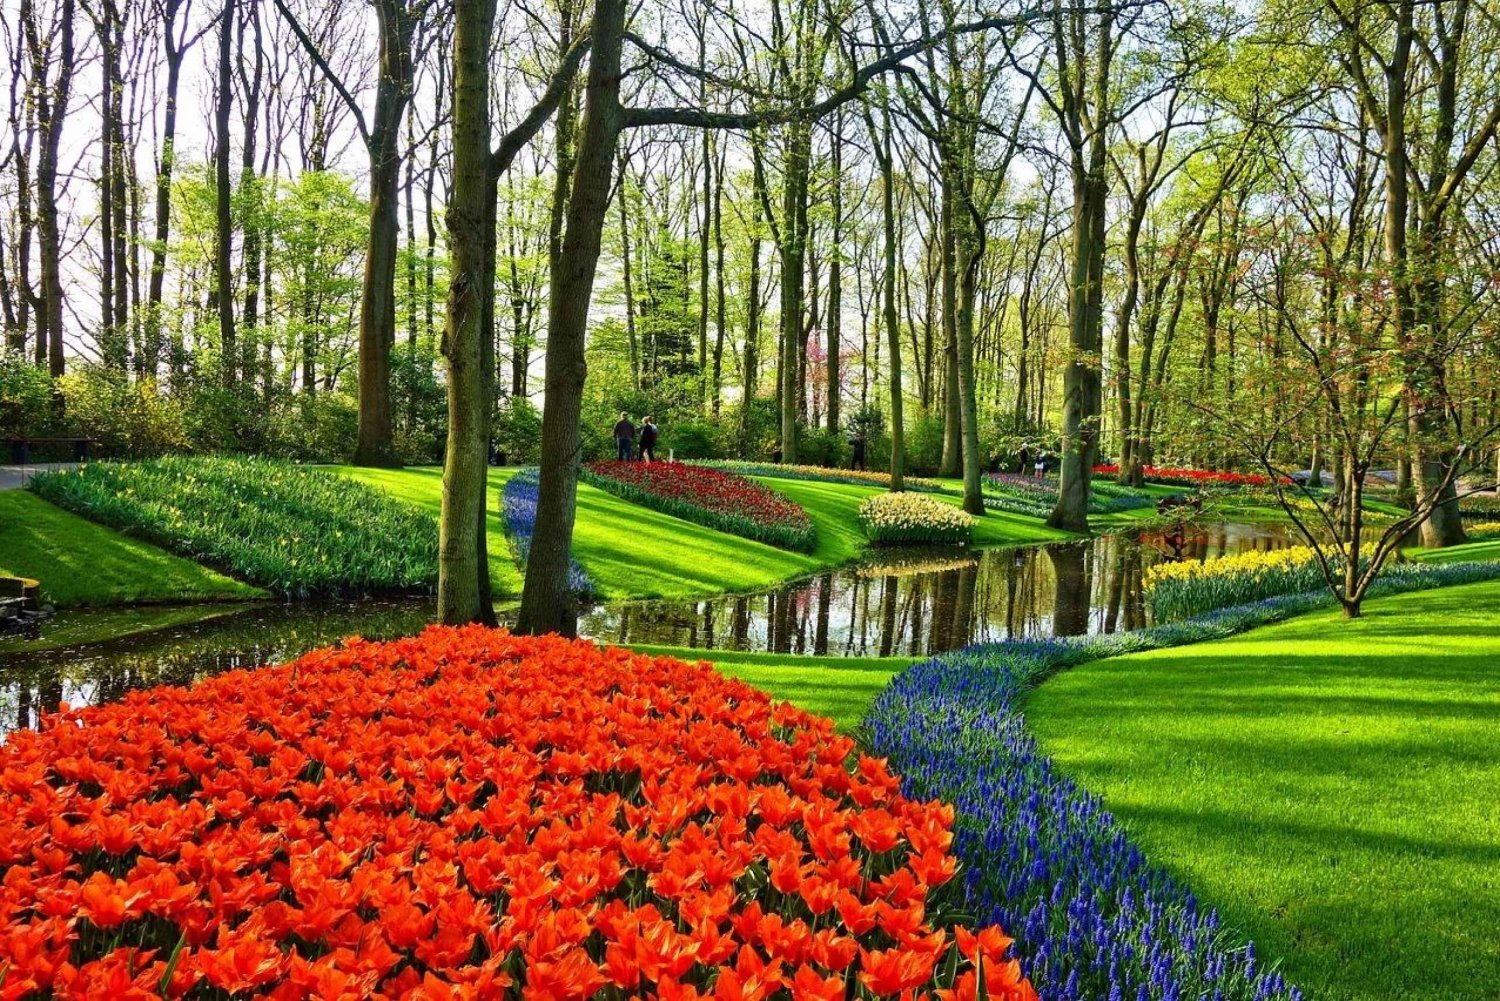 Keukenhofs trädgårdar och tulpanupplevelse från Amsterdam